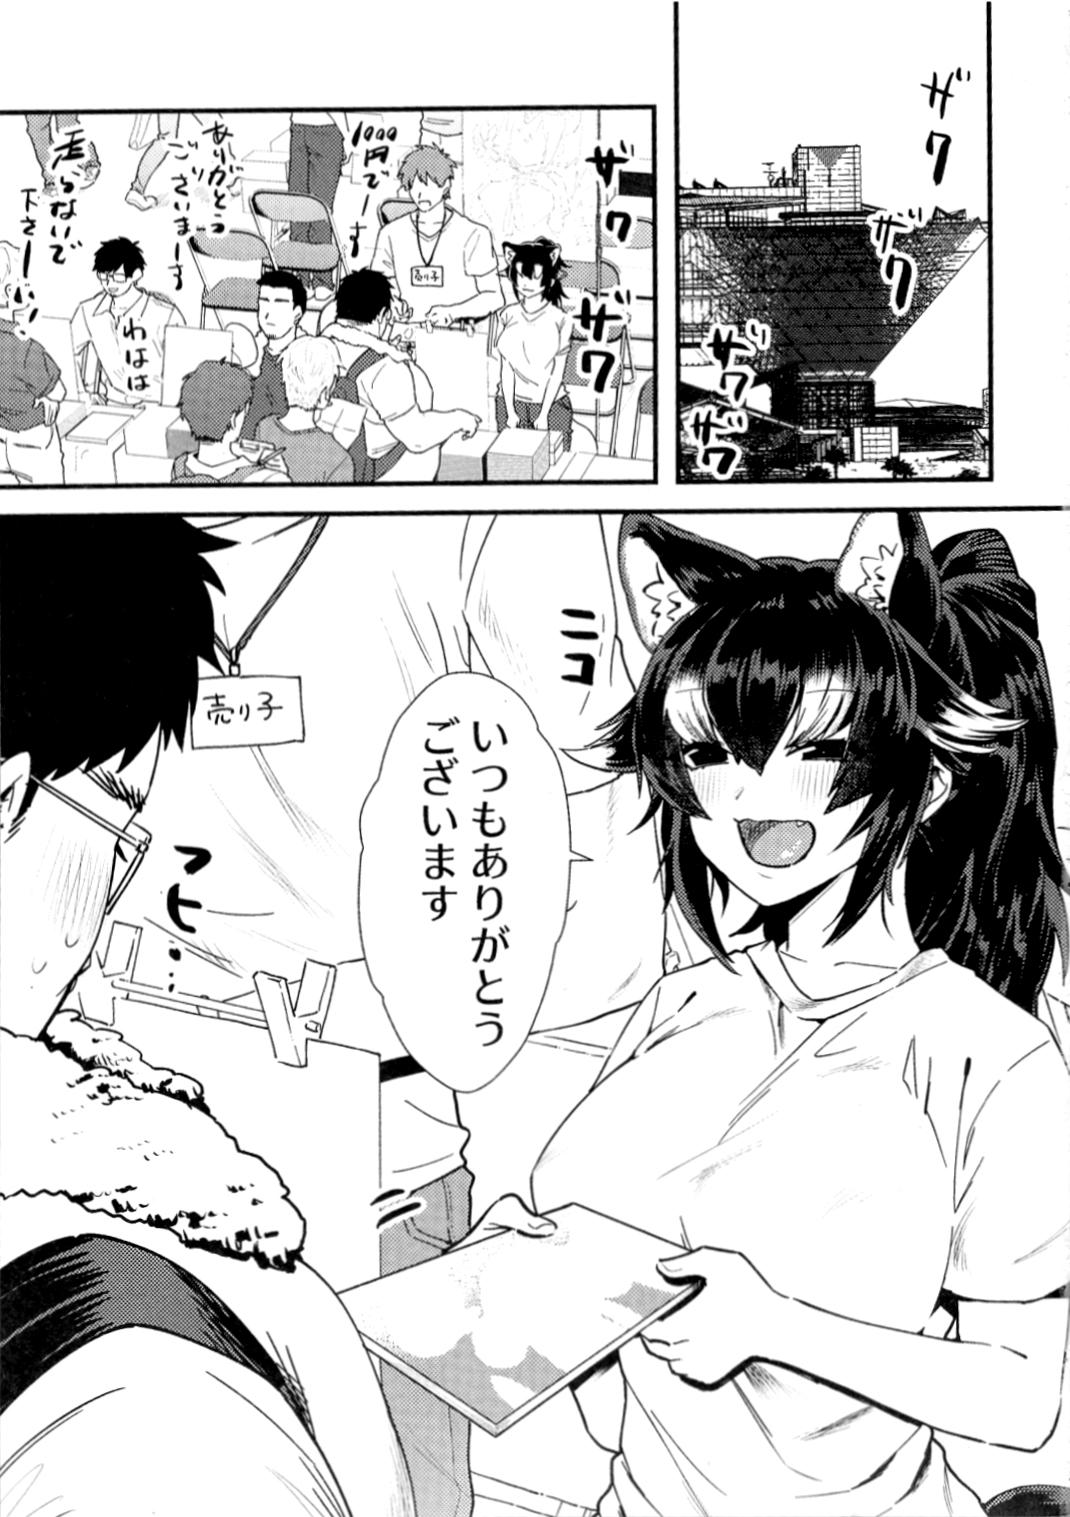 Ass Tairiku Ookami Sensei to OffPako Shitai - Kemono friends Transgender - Page 2